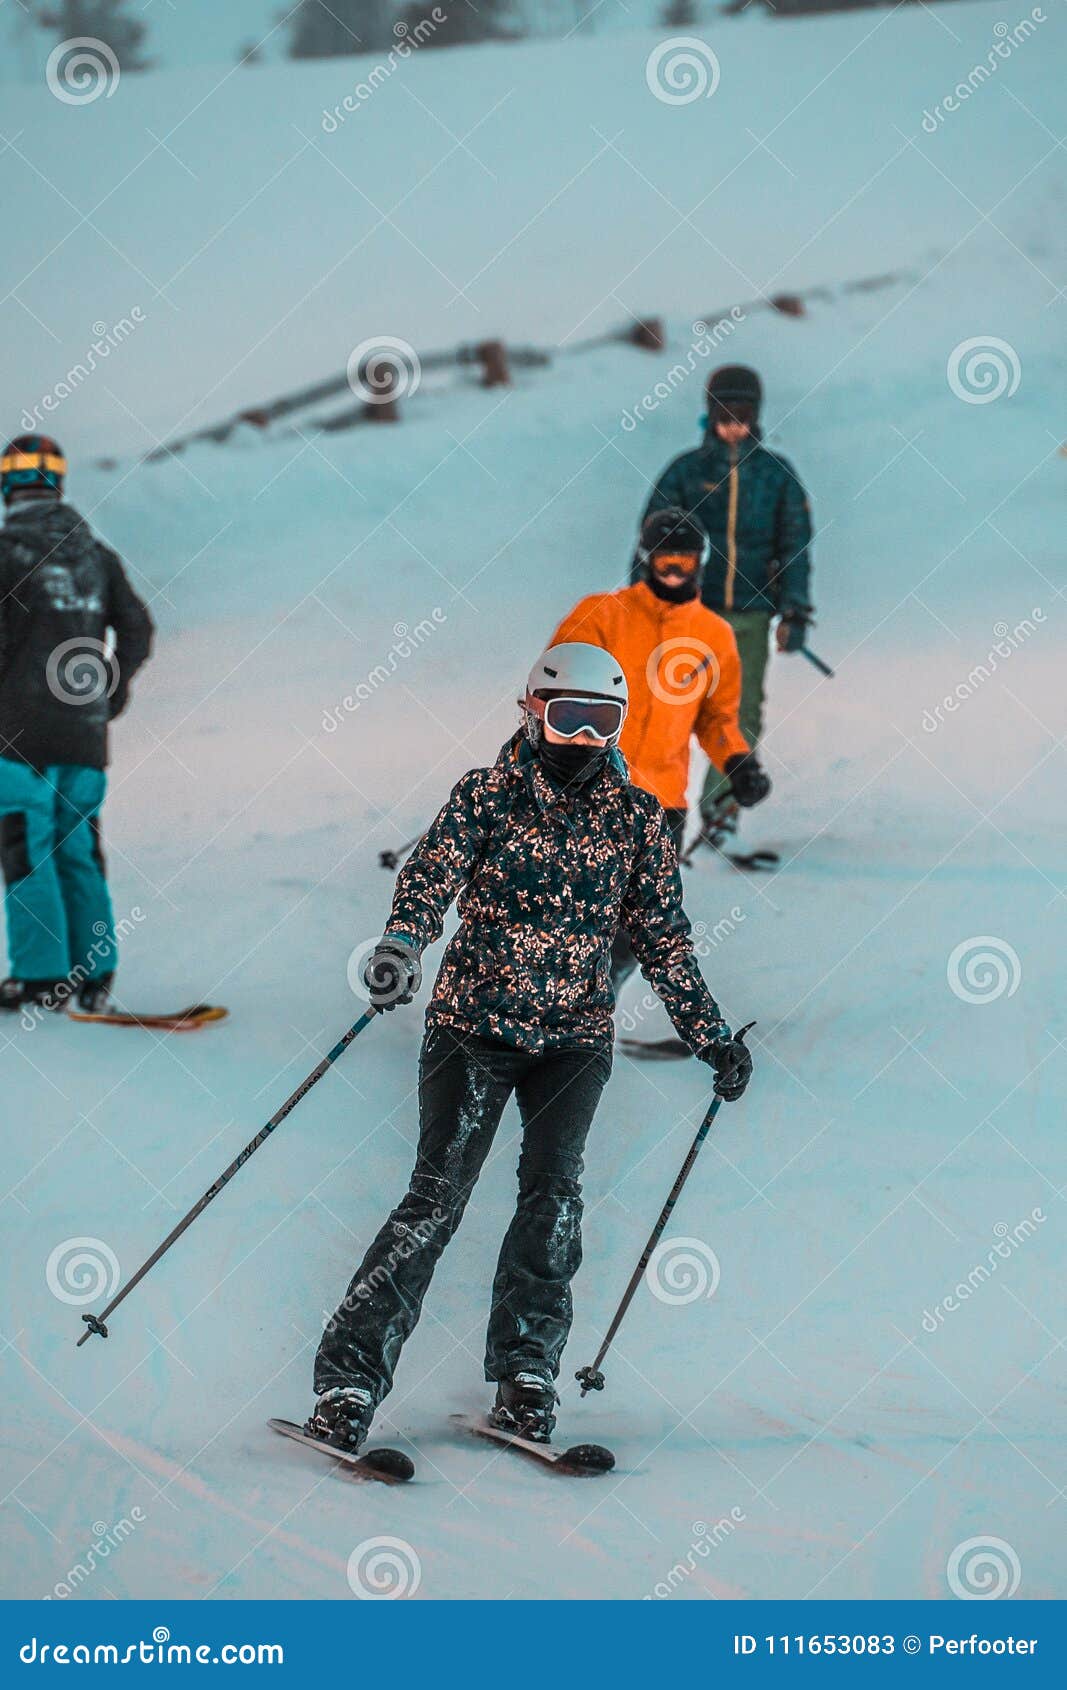 My friend skis